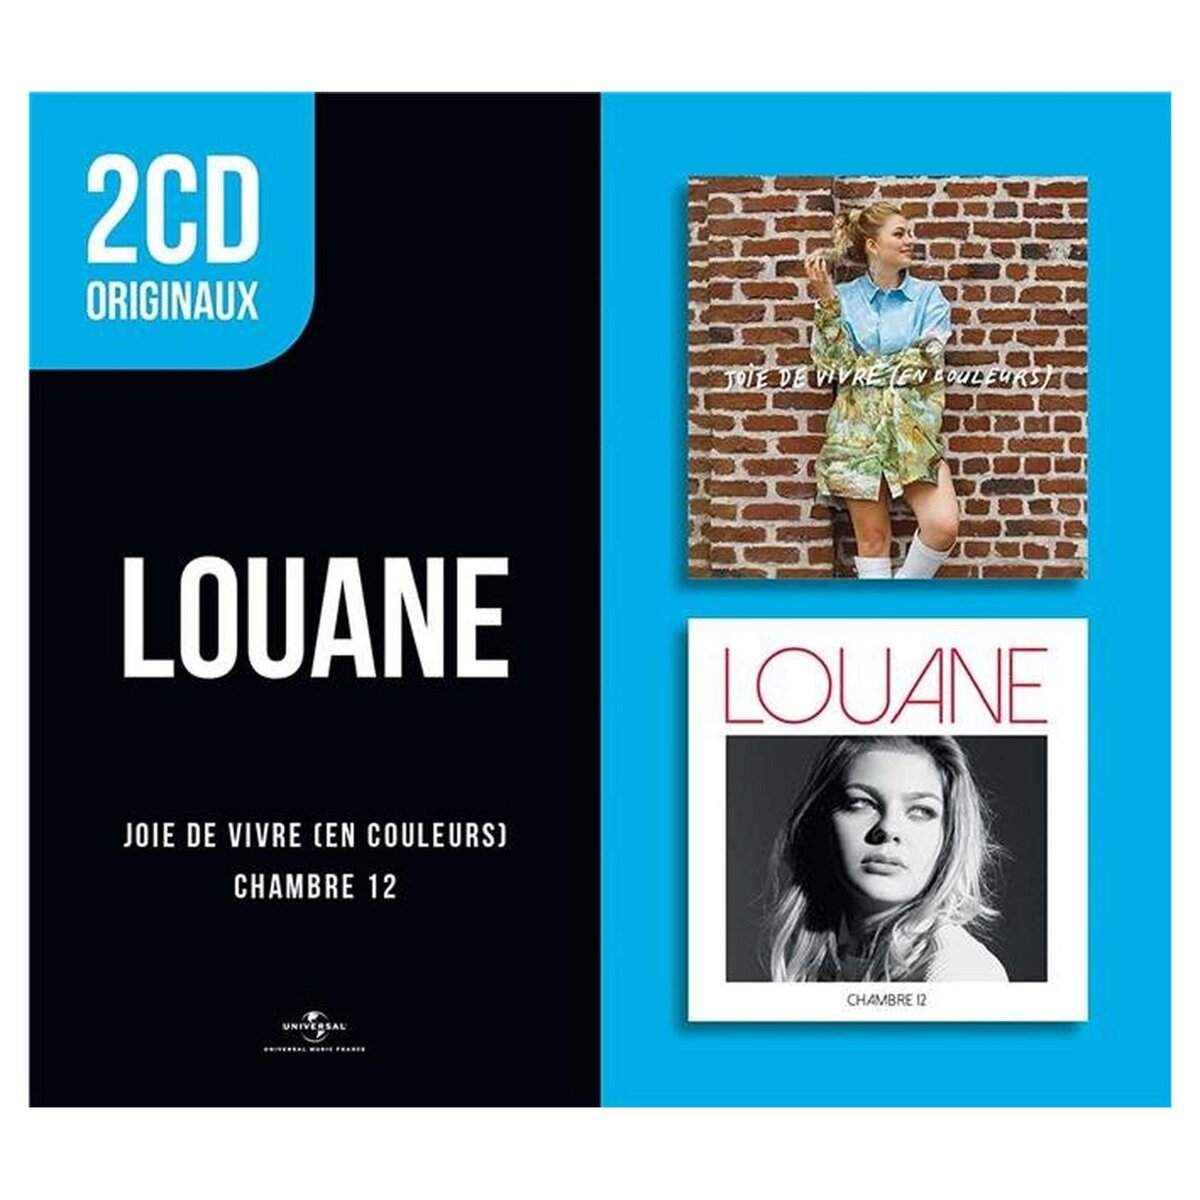 Louane - Joie de vivre / Chambre 12 CD